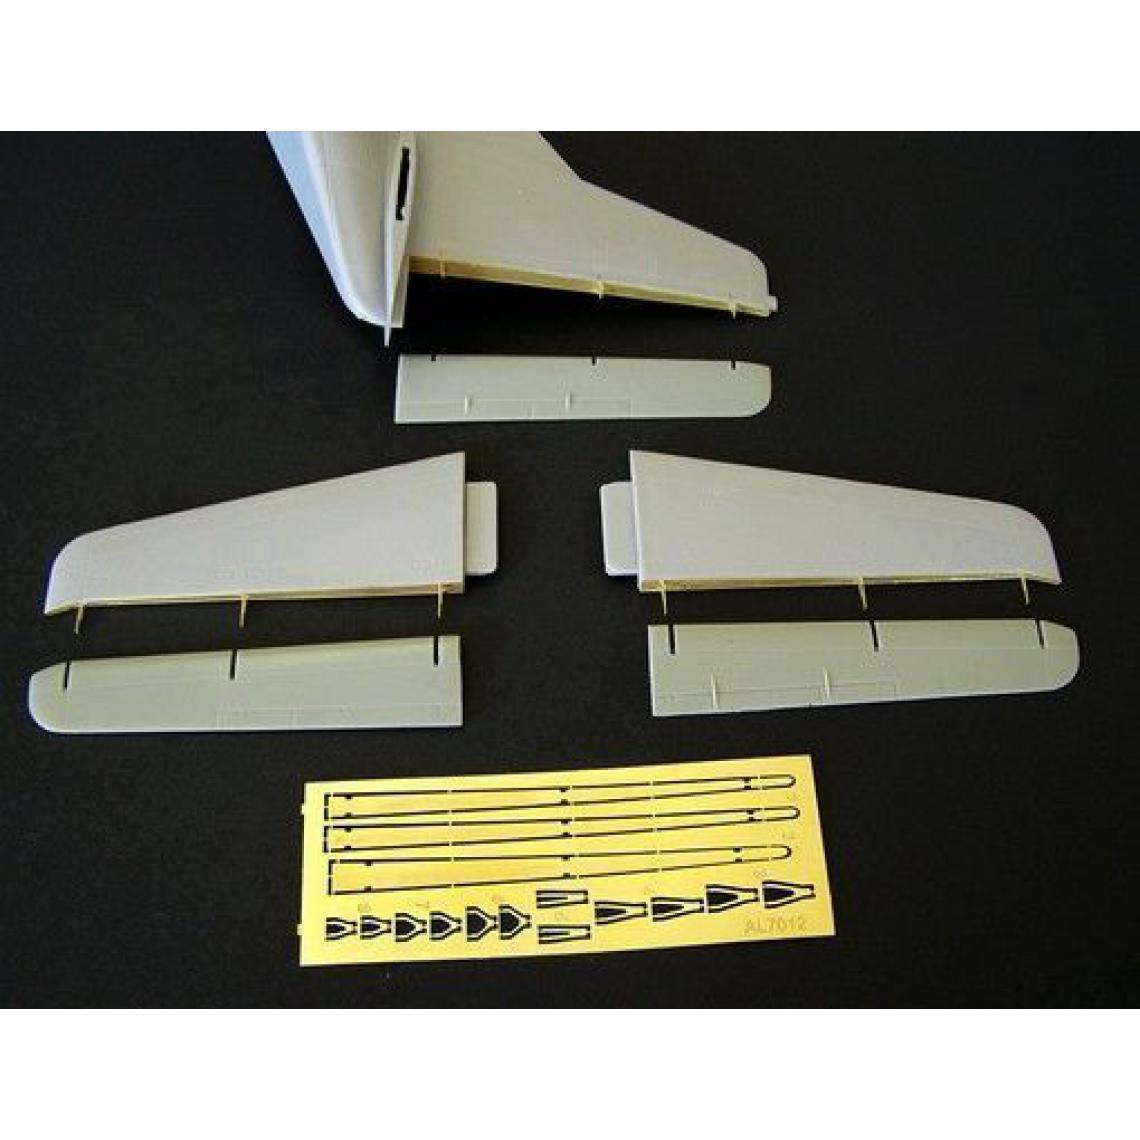 Plus Model - Tail surfaces for C123 Provider - 1:72e - Plus model - Accessoires et pièces